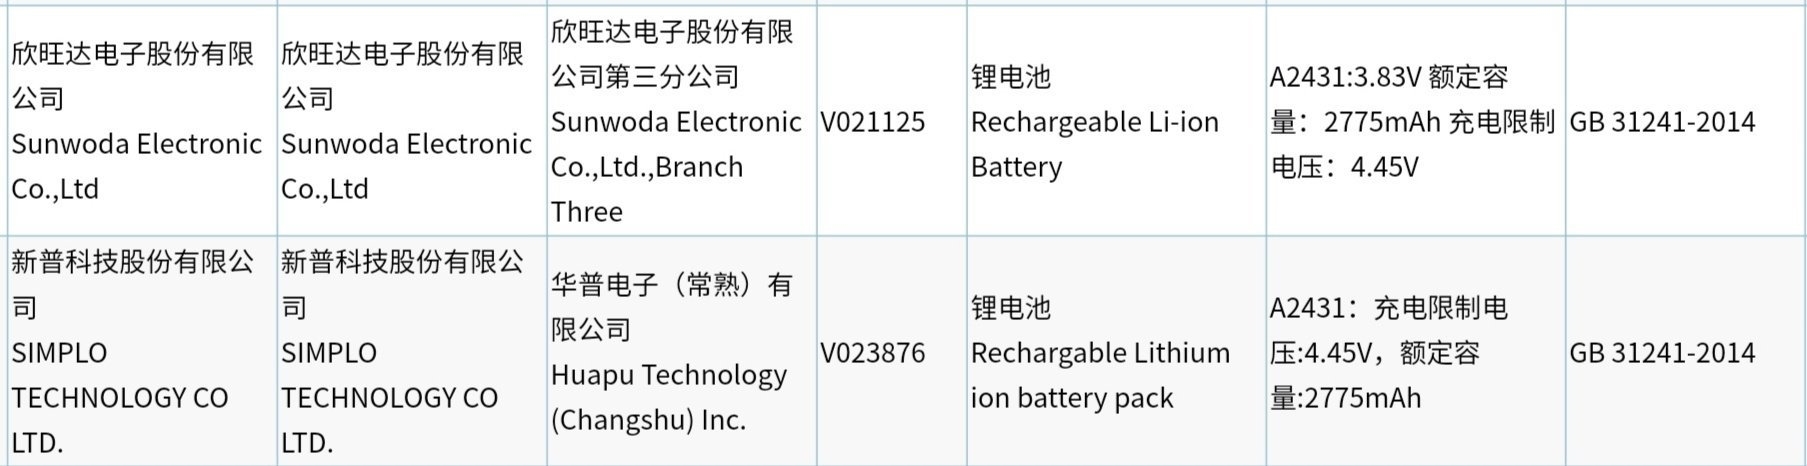 国行iPhone 12电池容量确认 苹果迷之自信